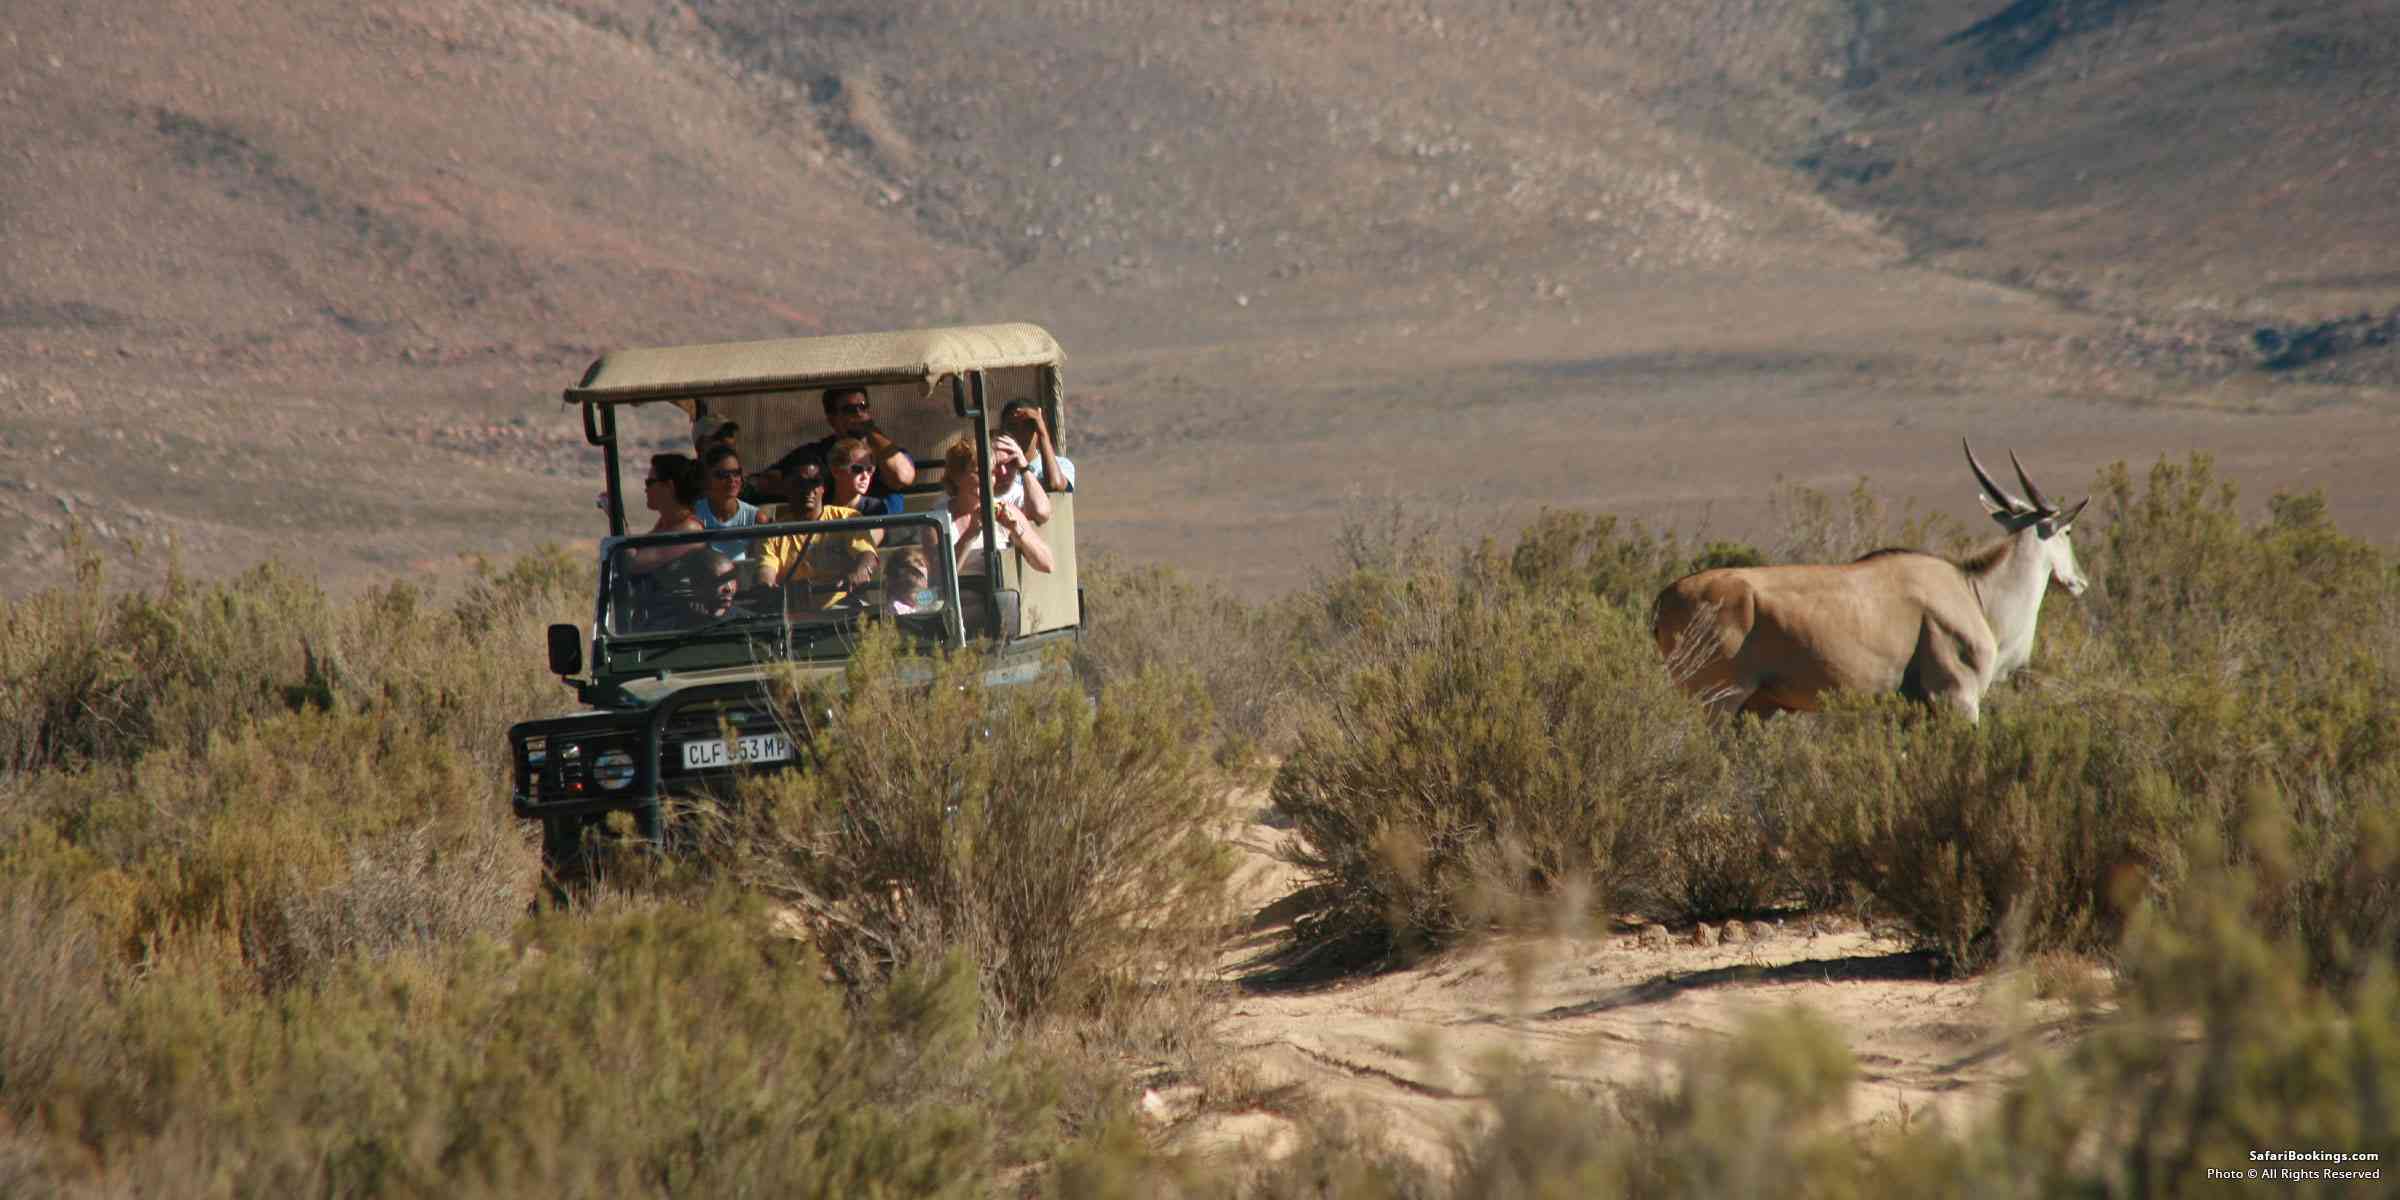 10 Tips on Vehicle Etiquette on Safari